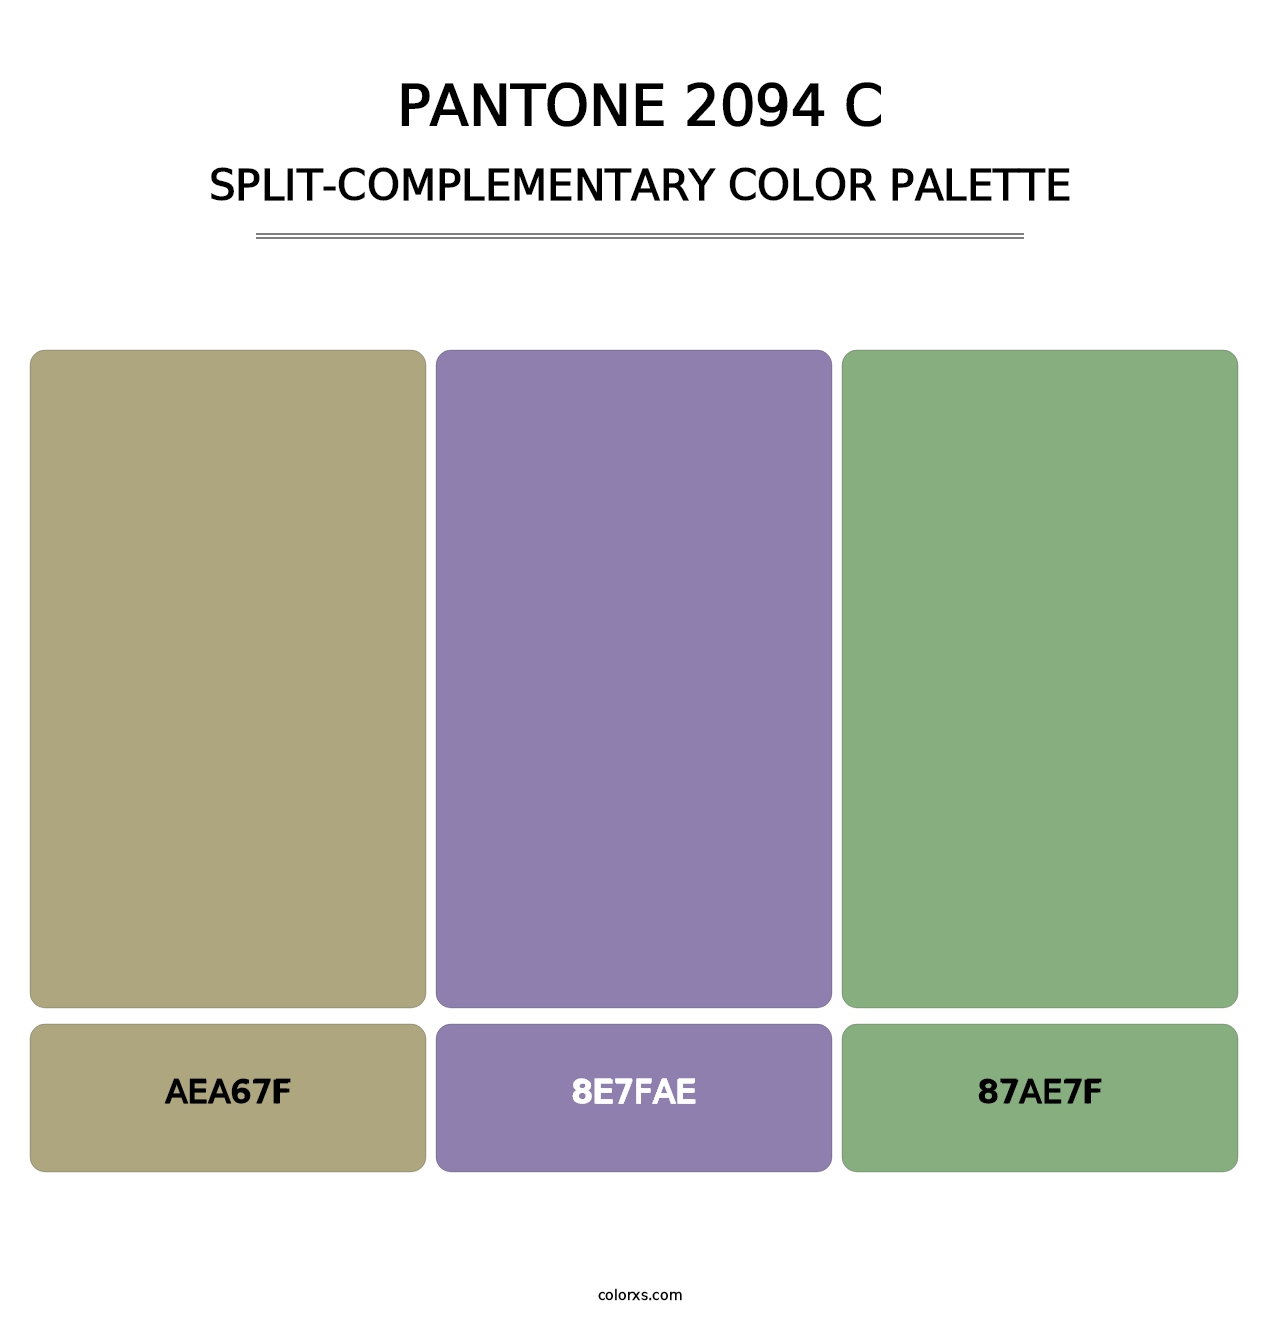 PANTONE 2094 C - Split-Complementary Color Palette